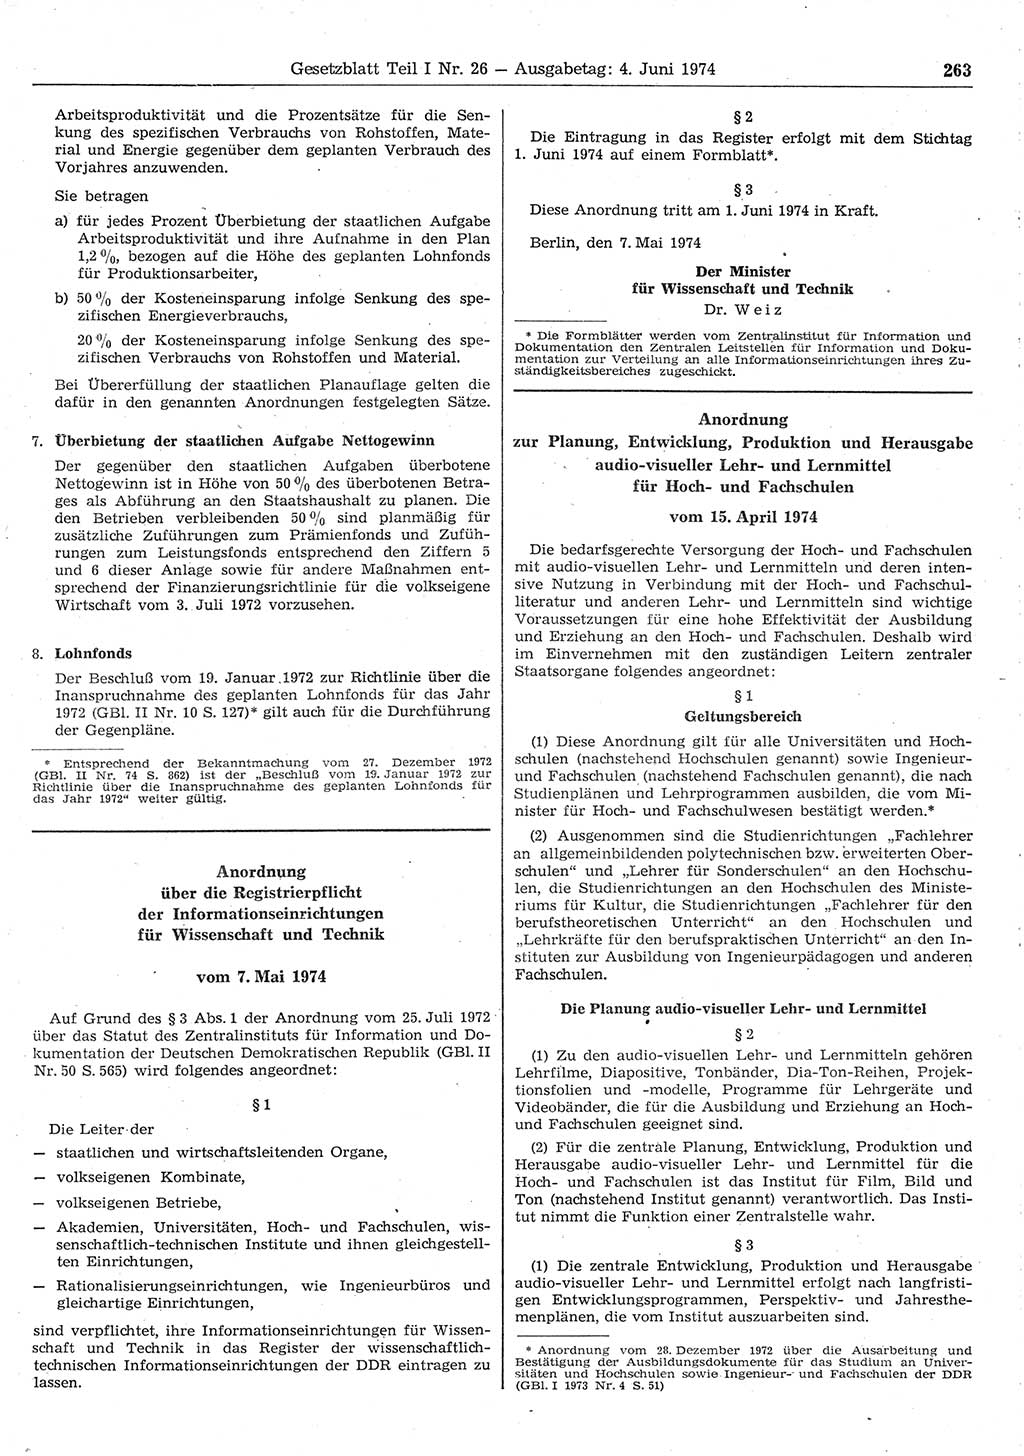 Gesetzblatt (GBl.) der Deutschen Demokratischen Republik (DDR) Teil Ⅰ 1974, Seite 263 (GBl. DDR Ⅰ 1974, S. 263)